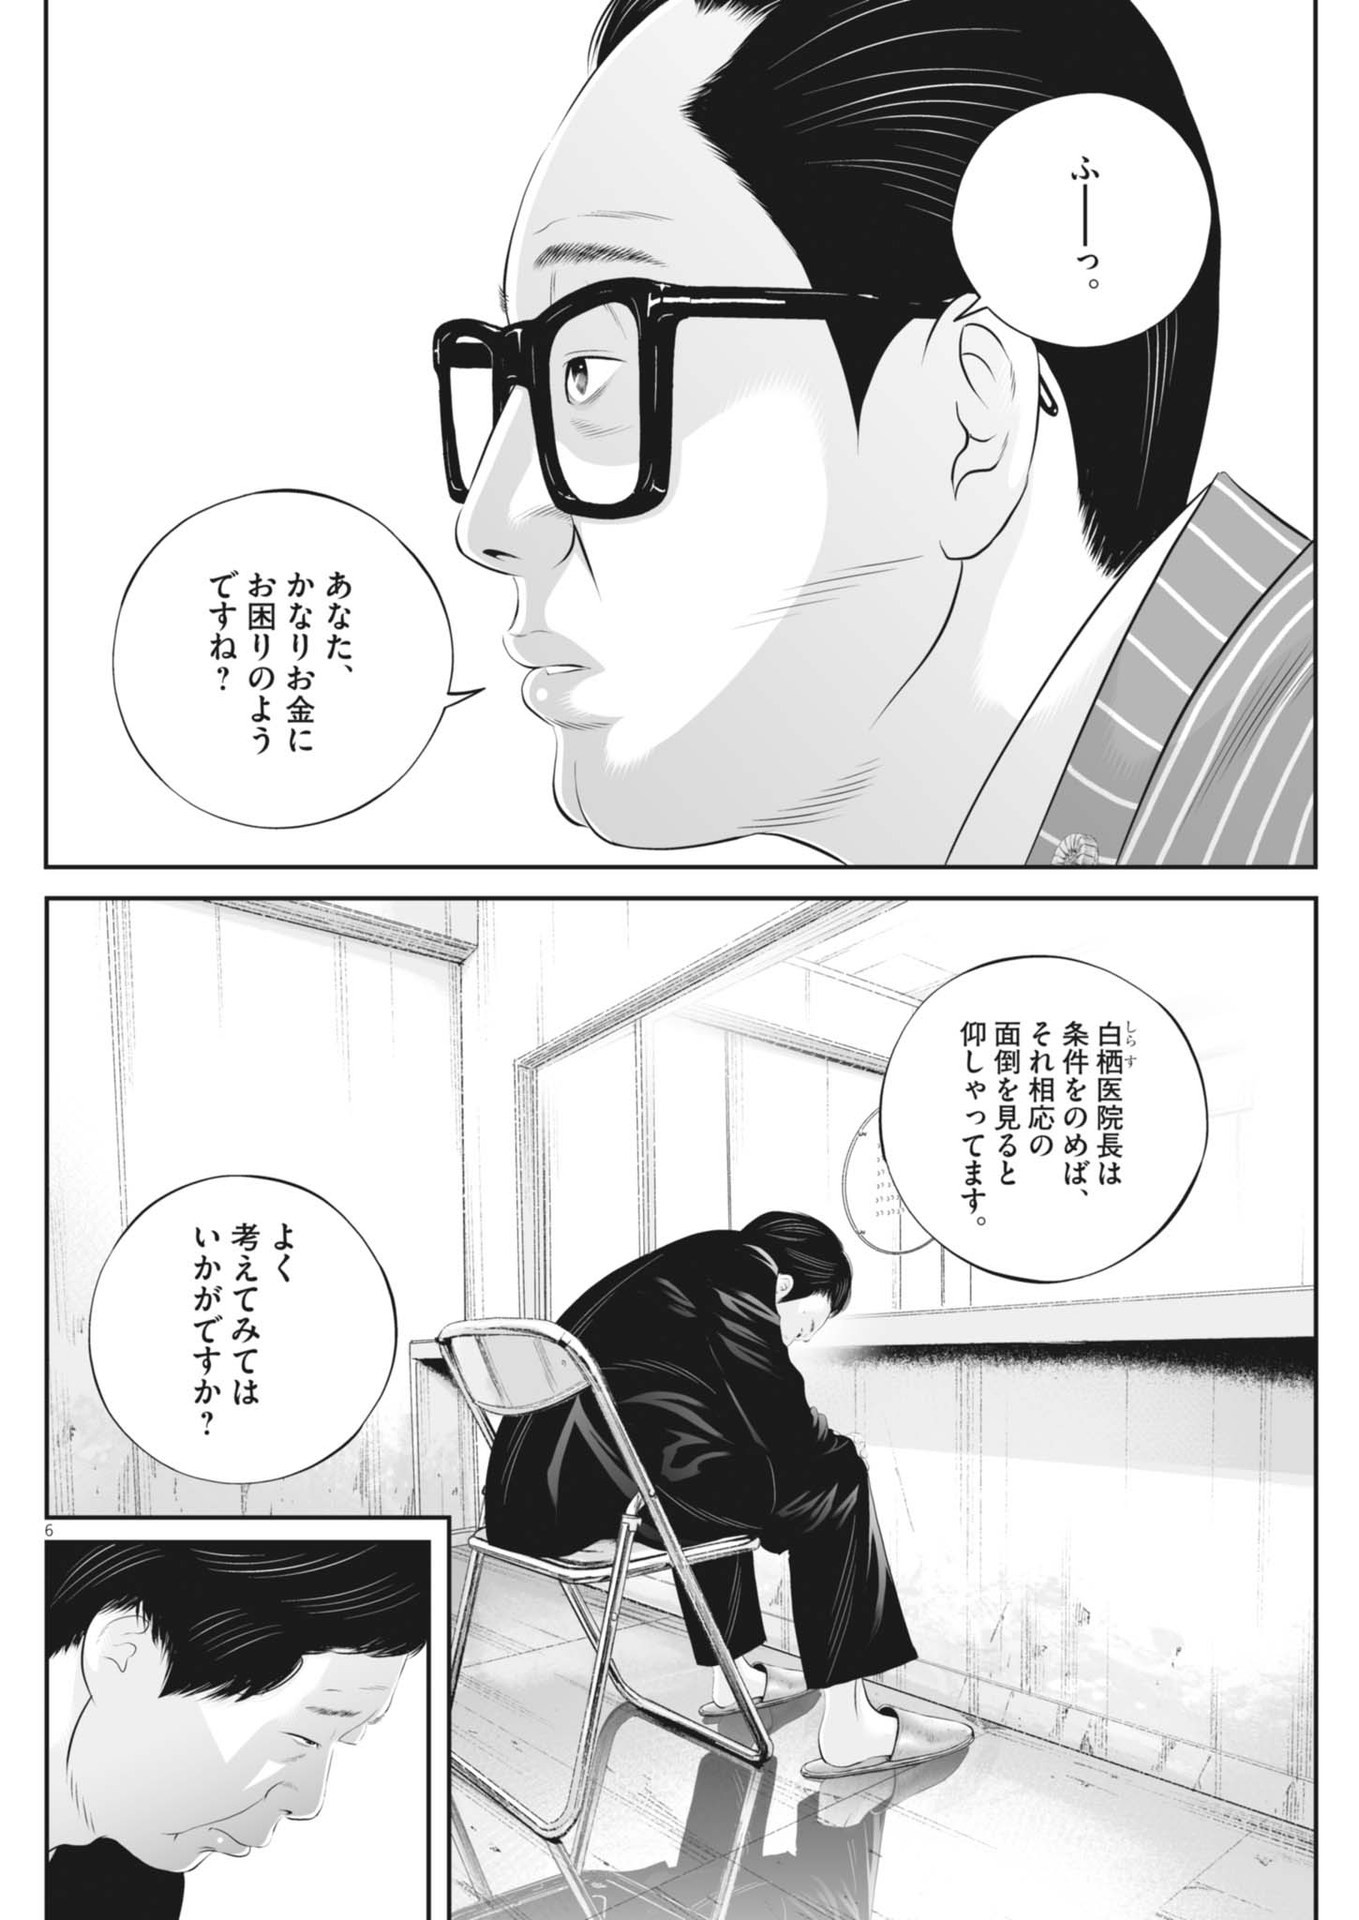 Kujou no Taizai - Chapter 103 - Page 6